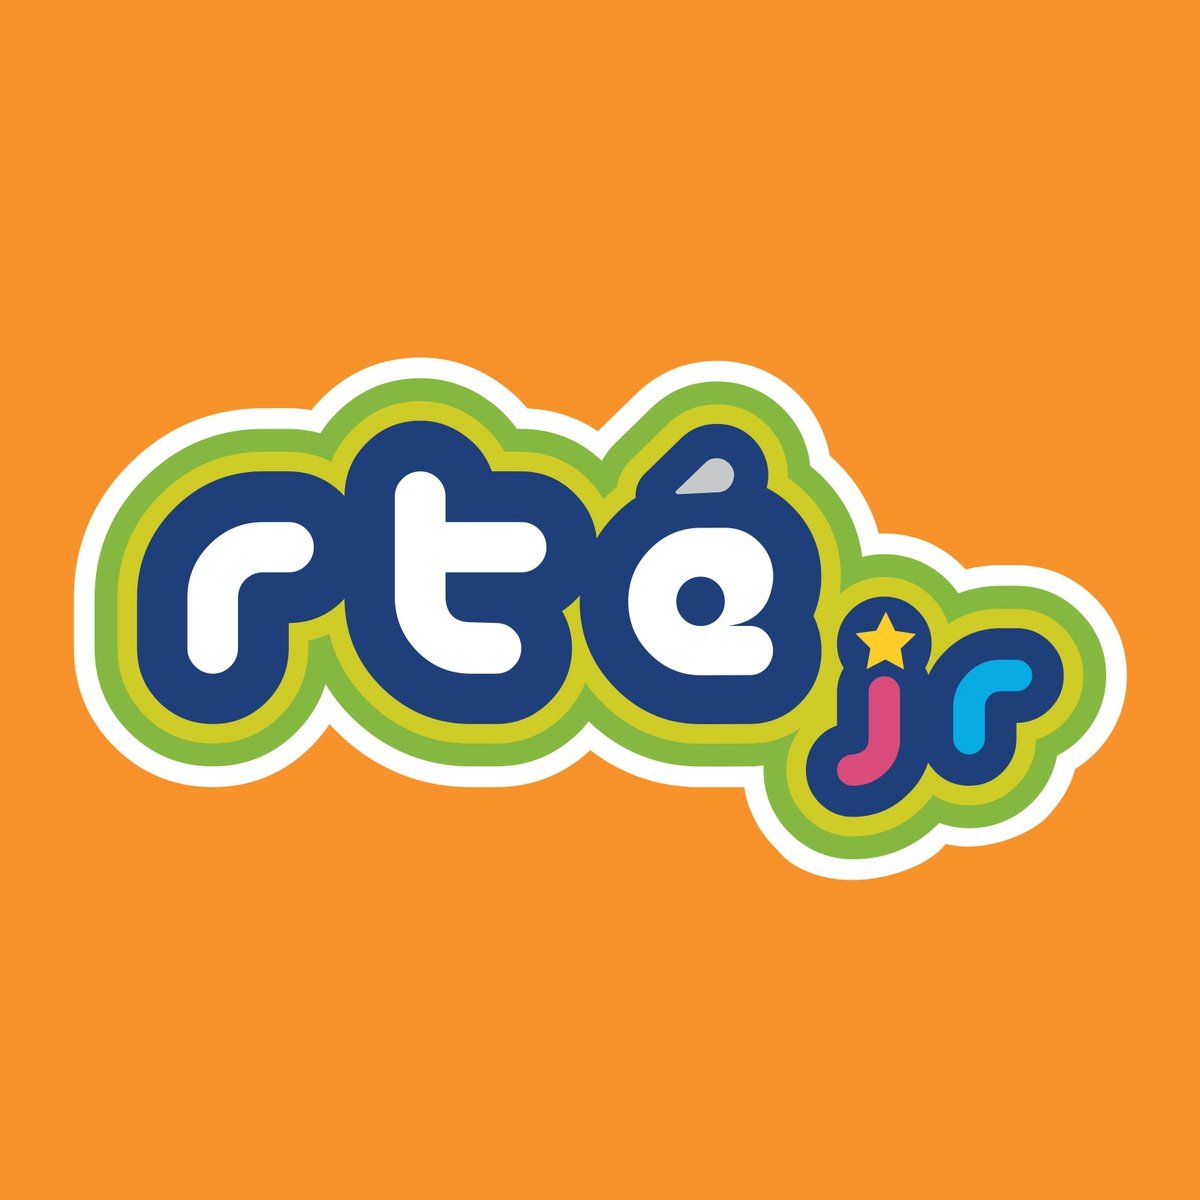 The RTÉjr Podcast